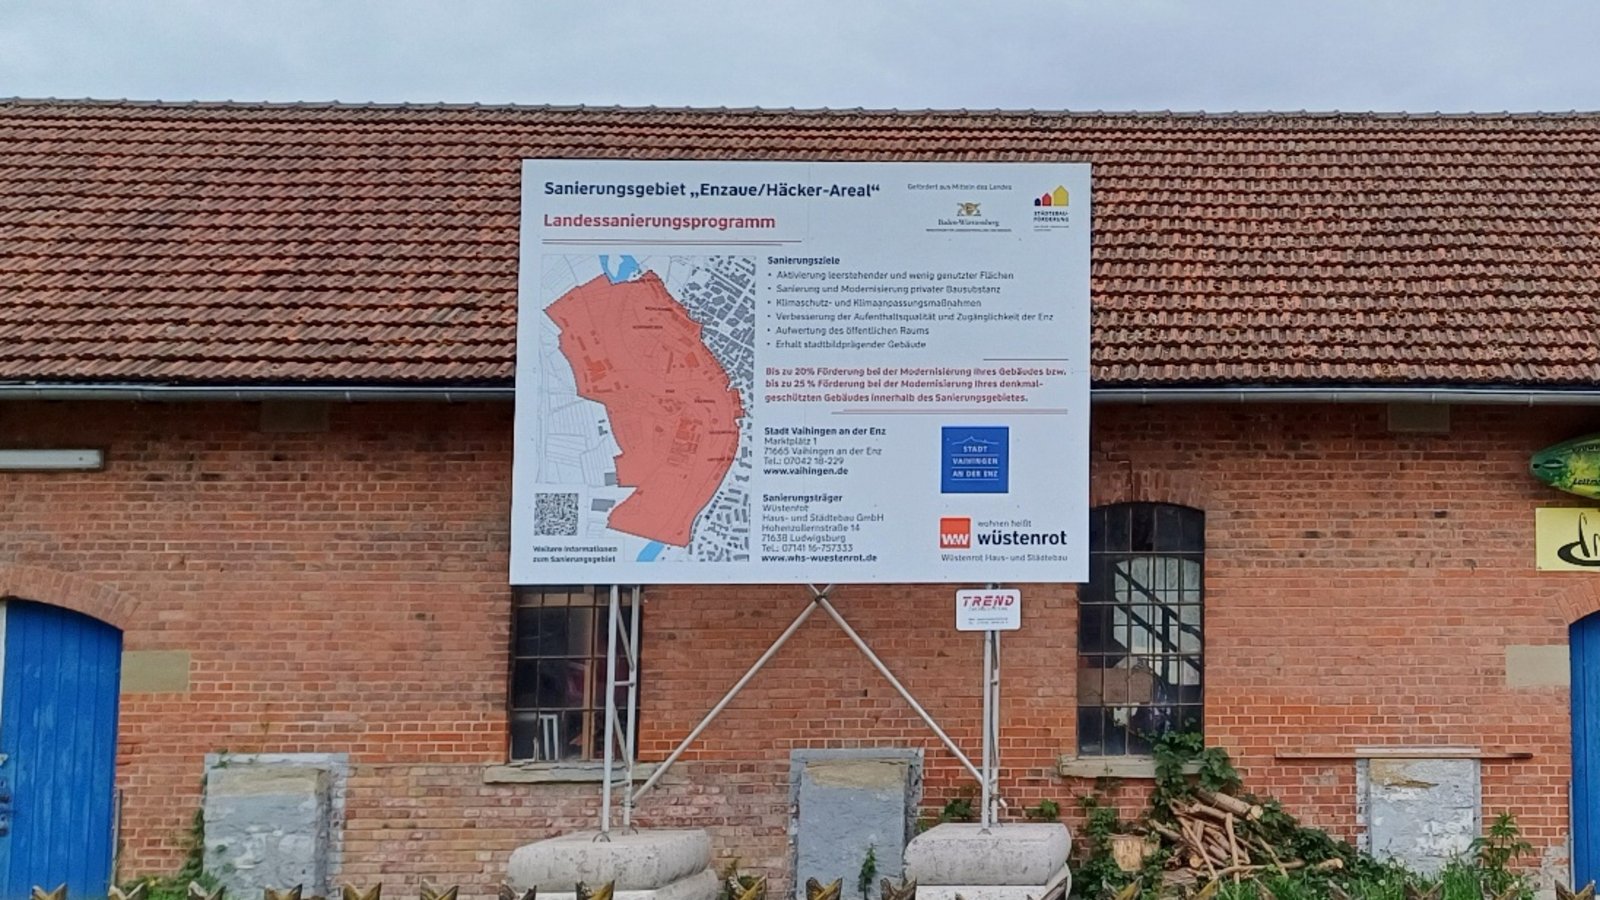 Mit einem großen Schild am Backsteingebäude in den Vaihinger Köpfwiesen wird seit ein paar Tagen auf das Sanierungsgebiet „Enzaue/Häcker-Areal“ hingewiesen. Foto: Rücker